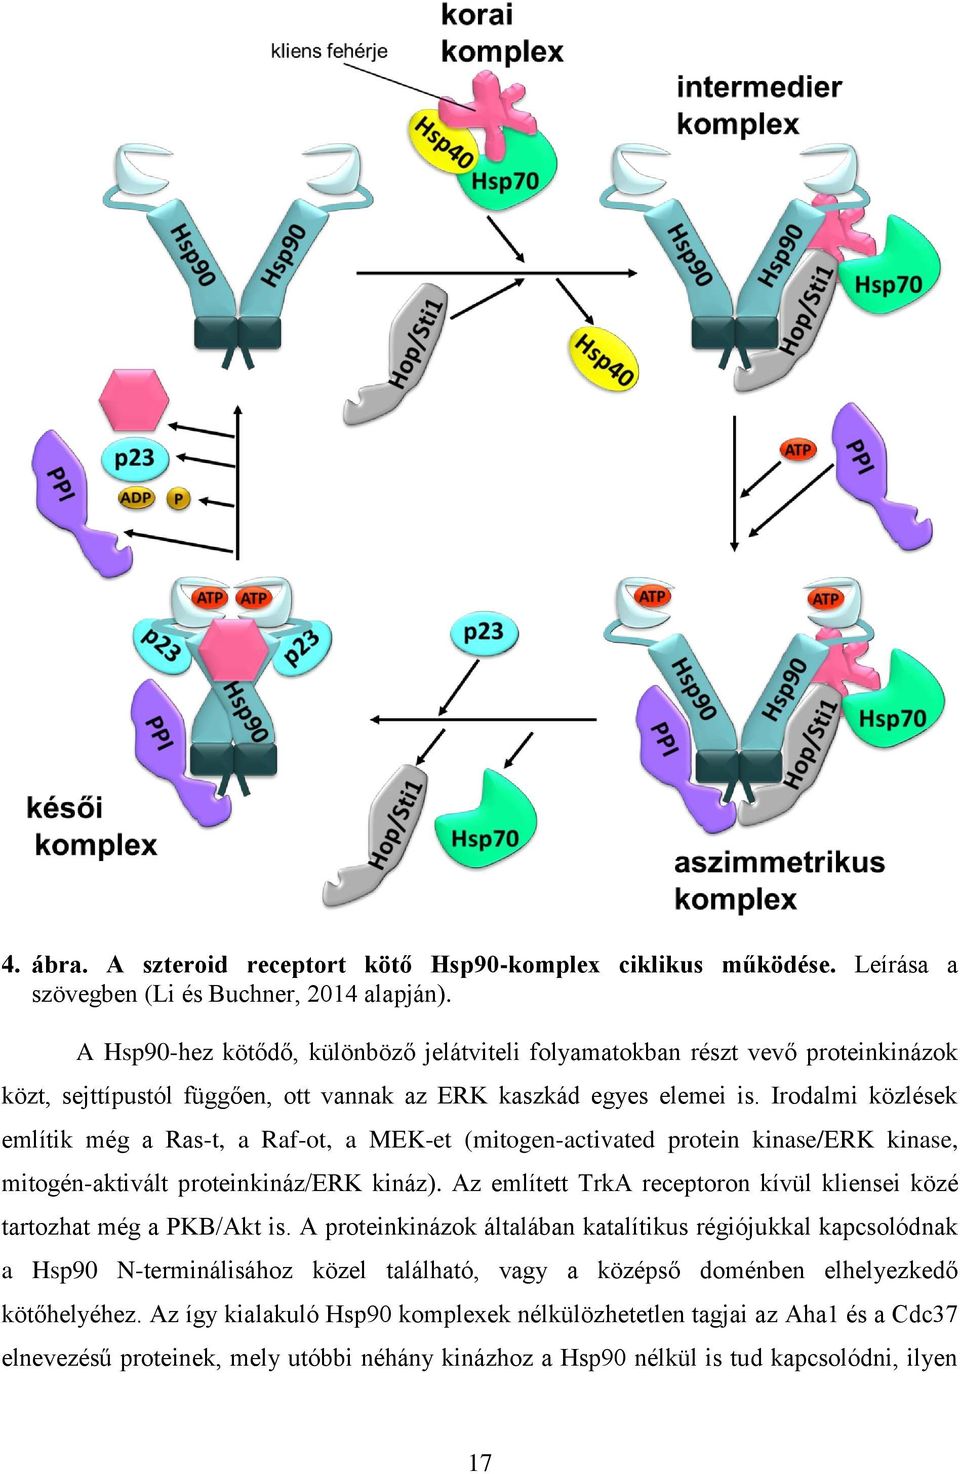 Irodalmi közlések említik még a Ras-t, a Raf-ot, a MEK-et (mitogen-activated protein kinase/erk kinase, mitogén-aktivált proteinkináz/erk kináz).